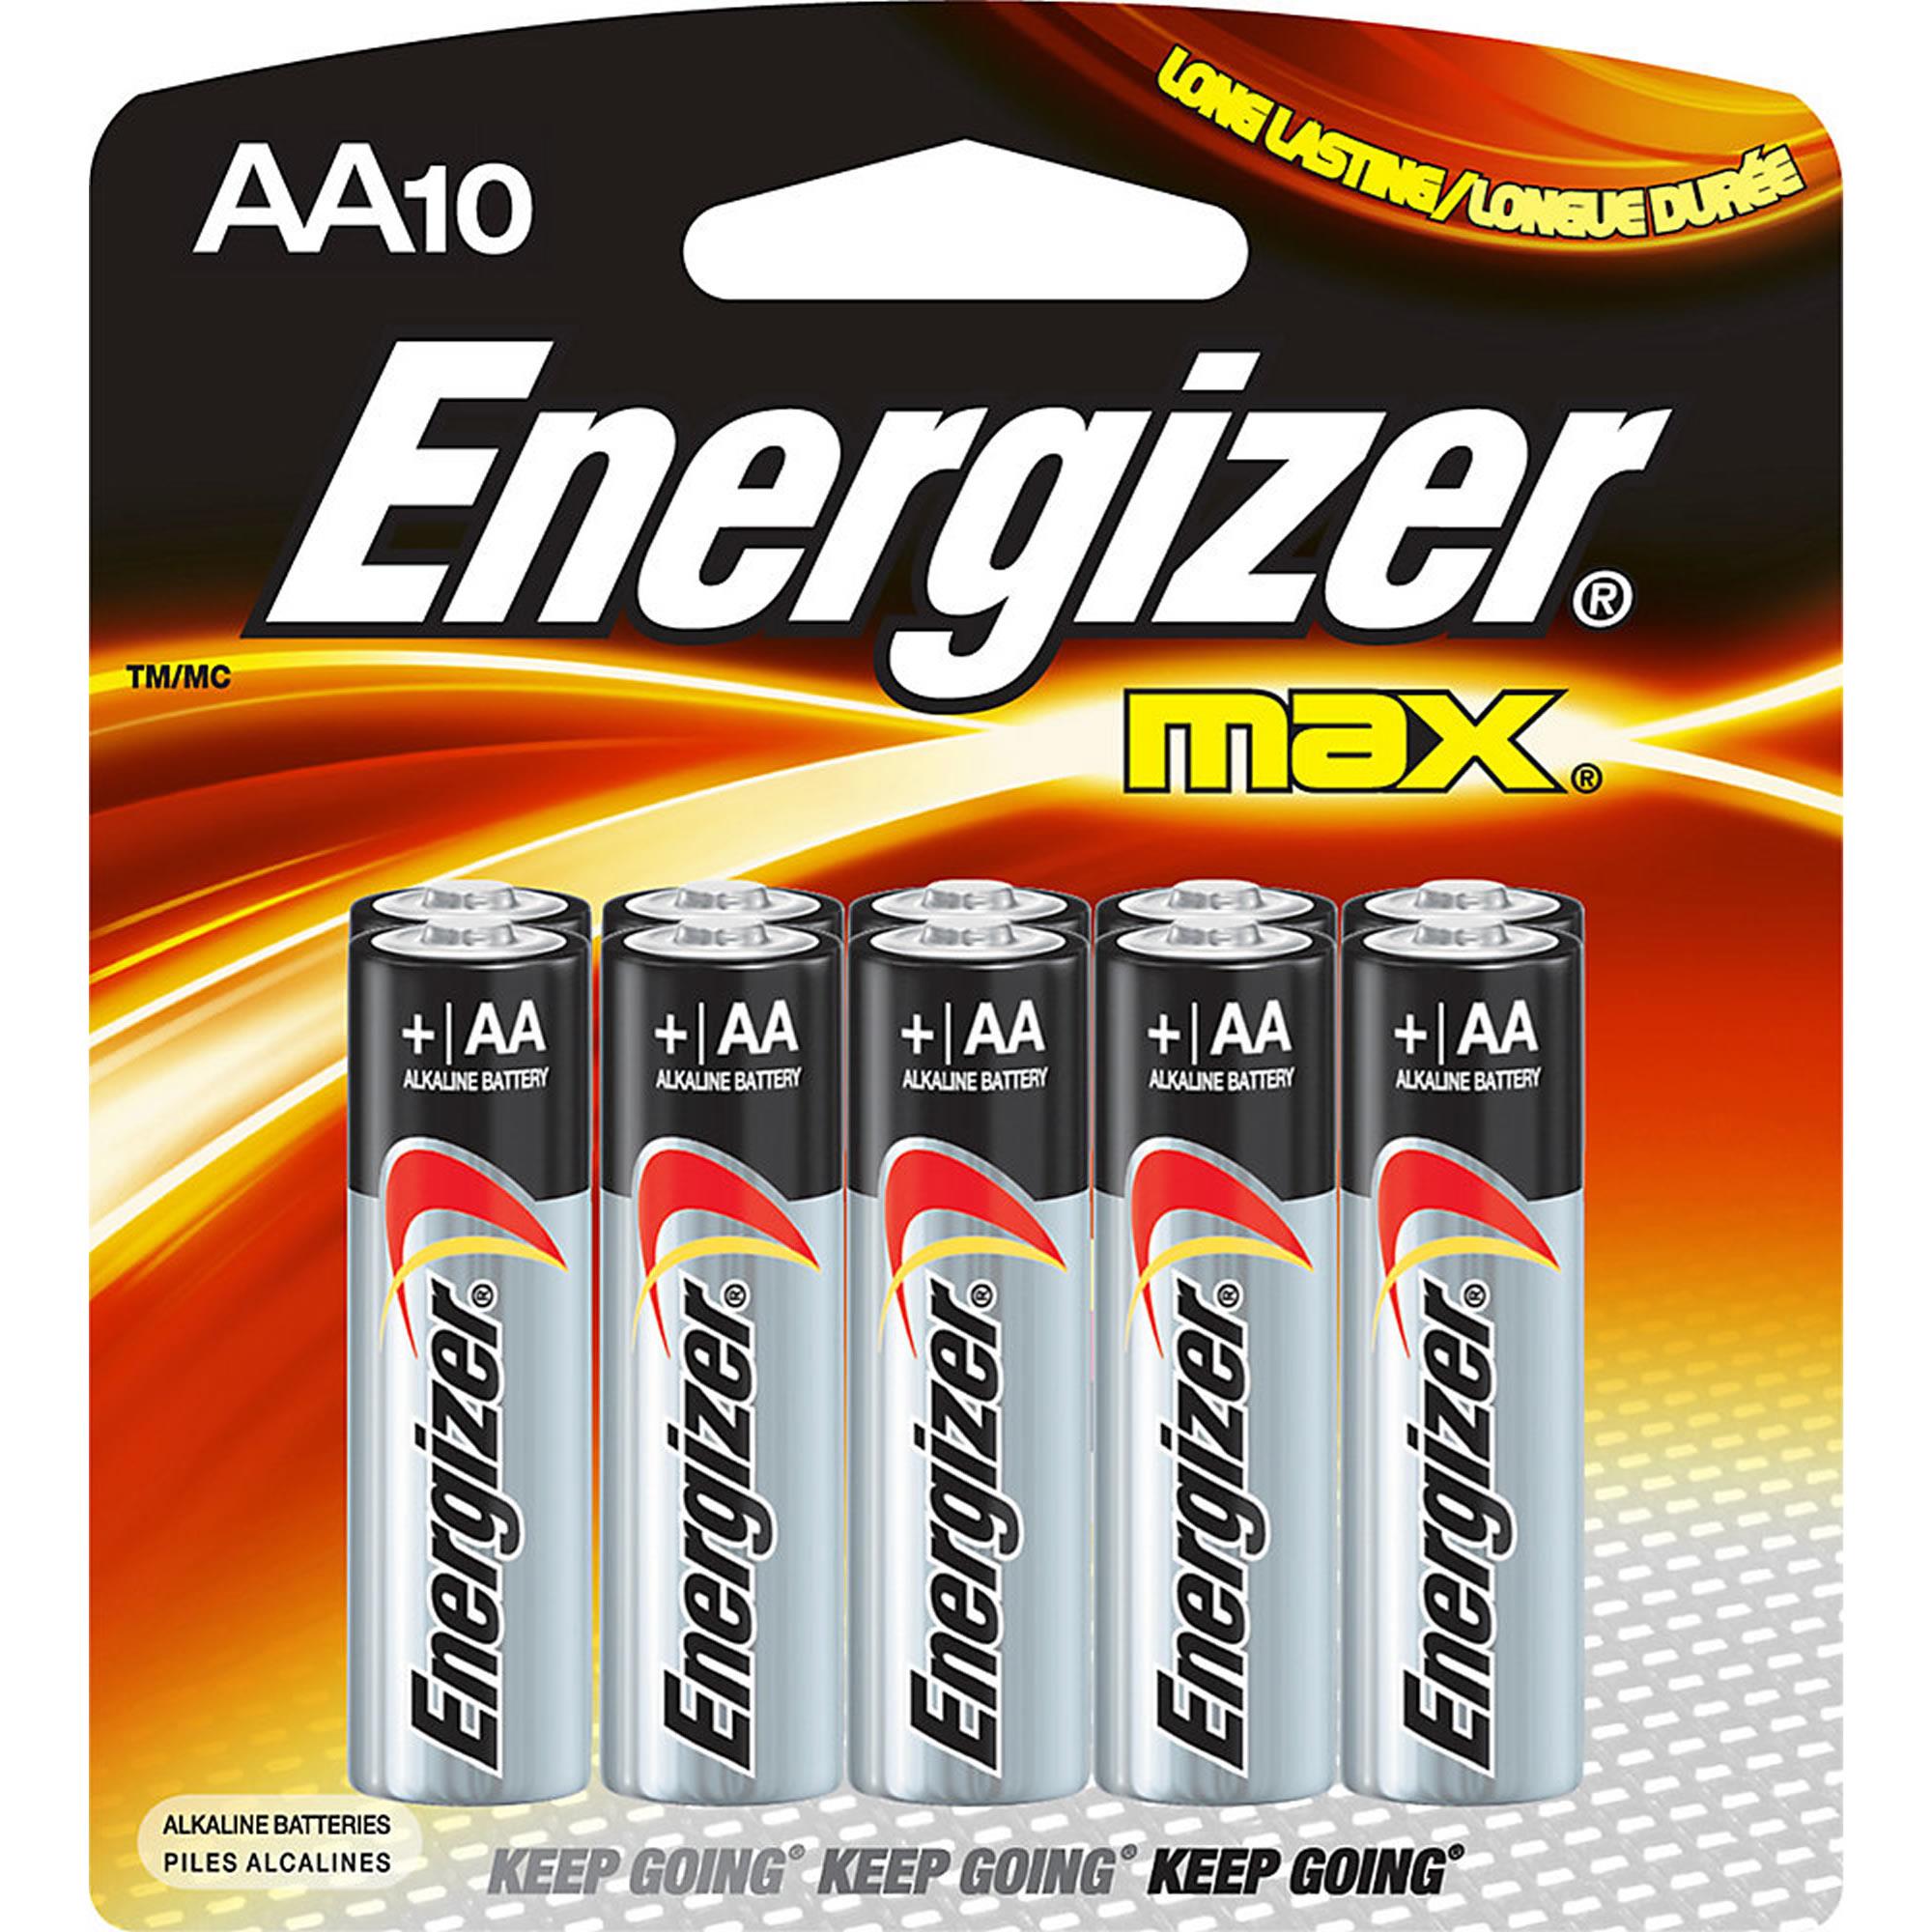 Berouw Seminarie Manifestatie Energizer AA Batteries, Double A Max Alkaline Battery, 10/Pack - Bluebird  Office Supplies